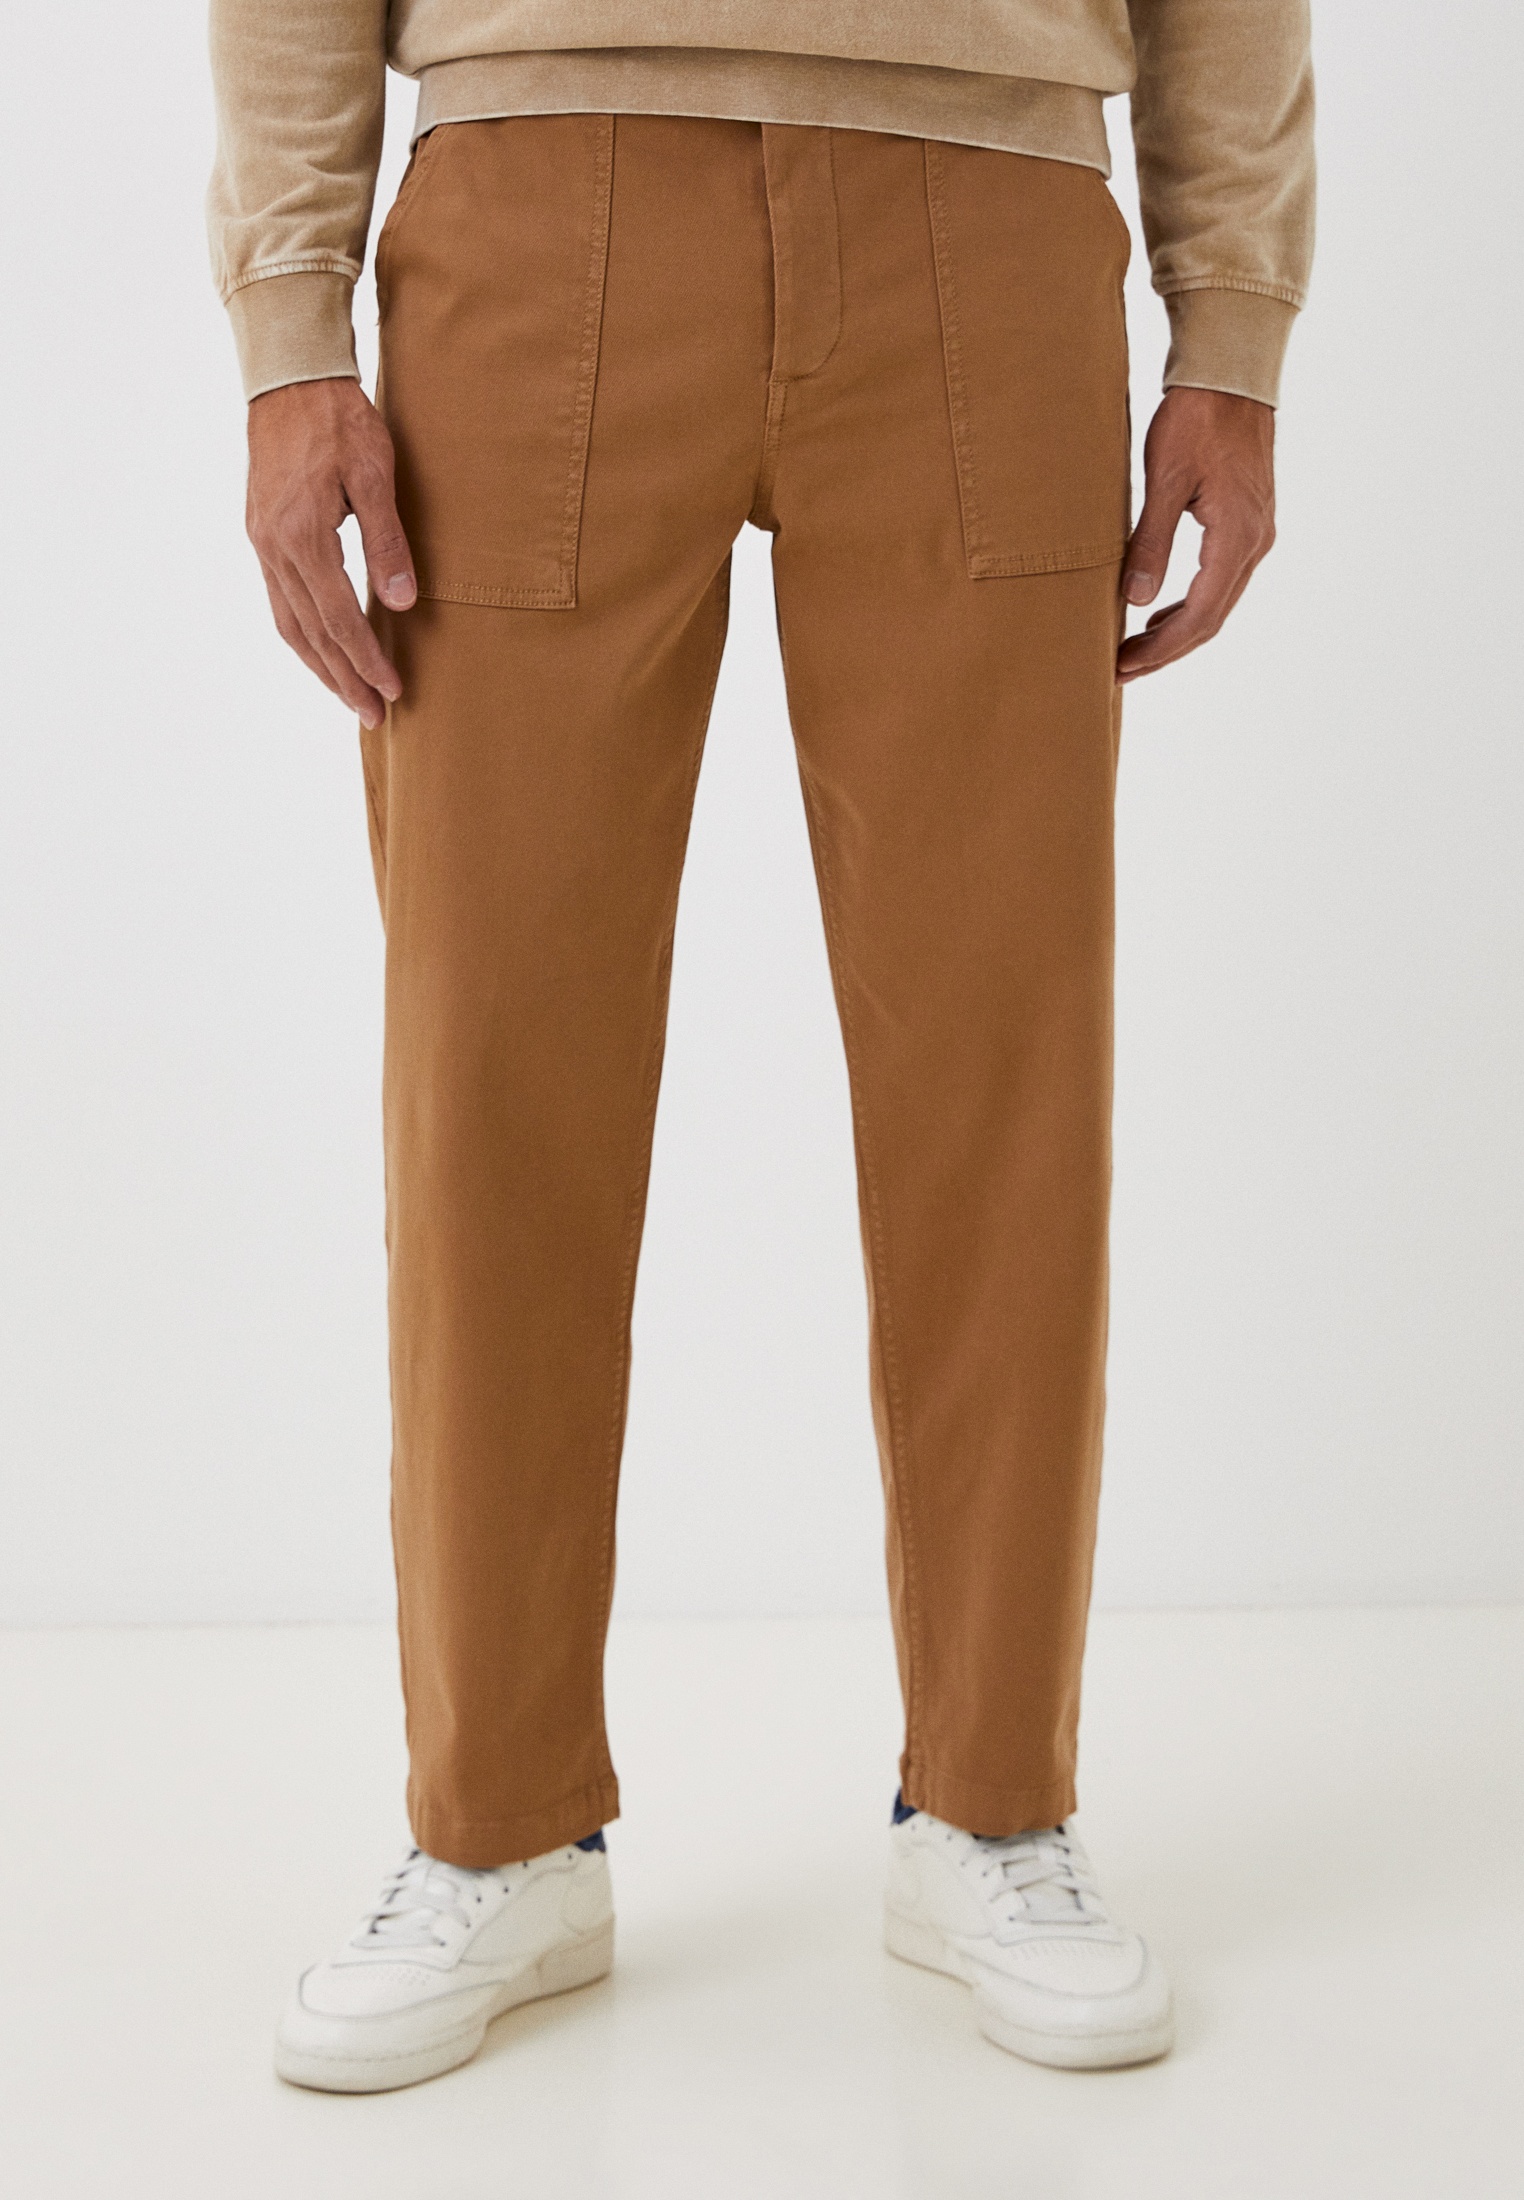 Мужские зауженные брюки United Colors of Benetton (Юнайтед Колорс оф Бенеттон) 43QFUF02J